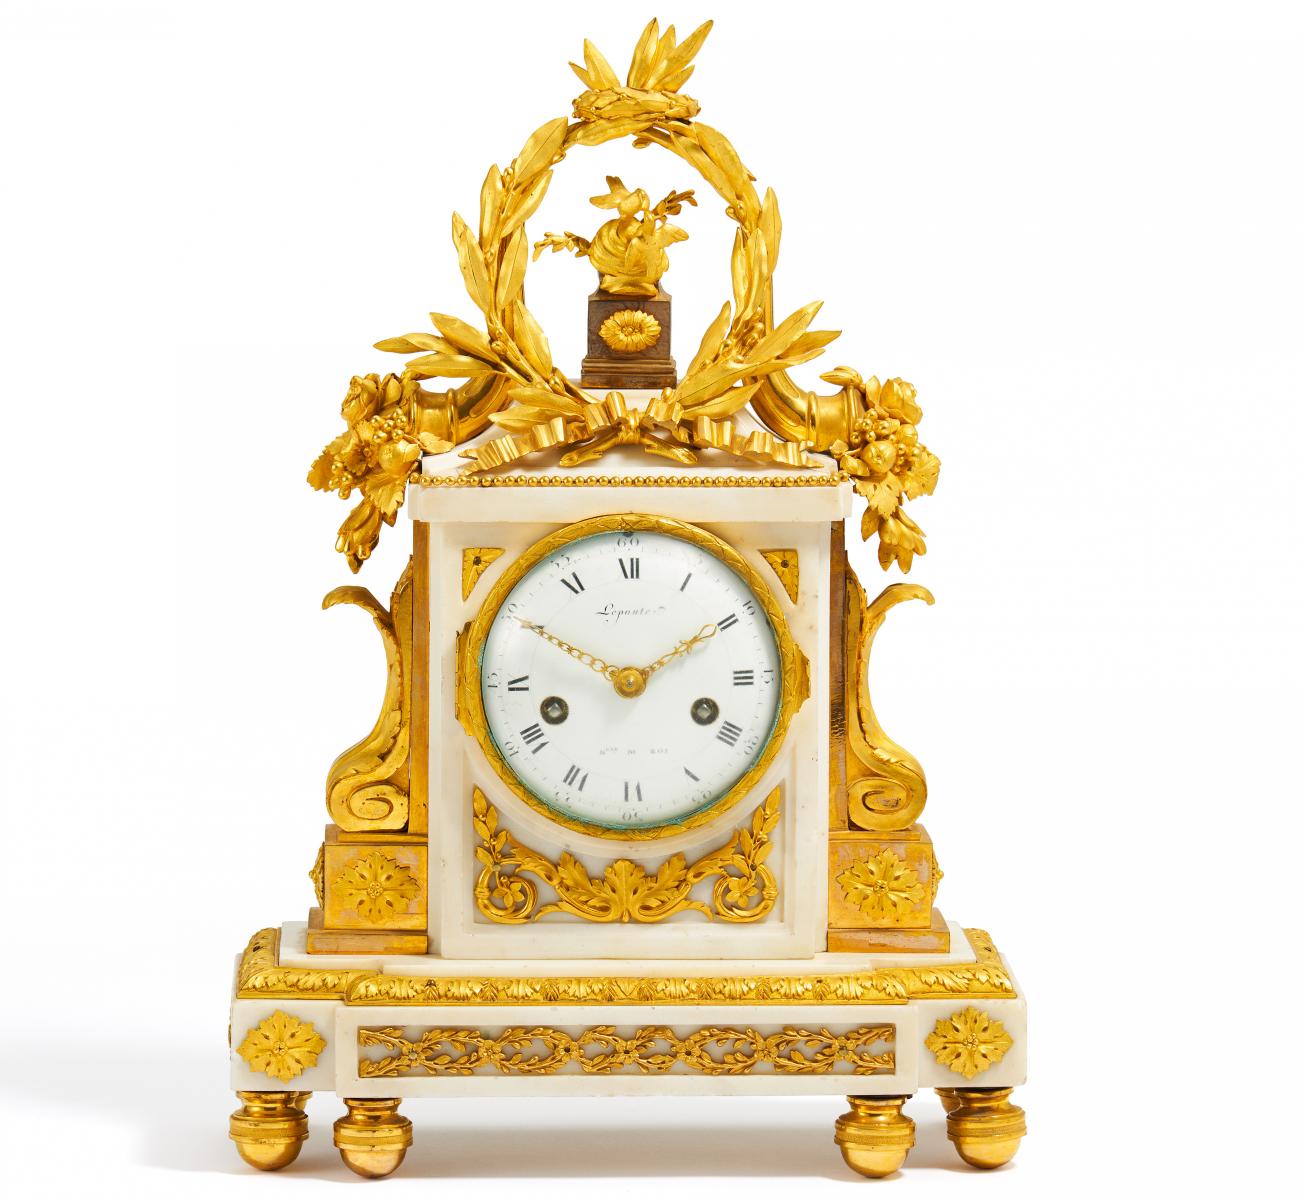 Paris - Pendule Louis XVI, 66146-8, Van Ham Kunstauktionen